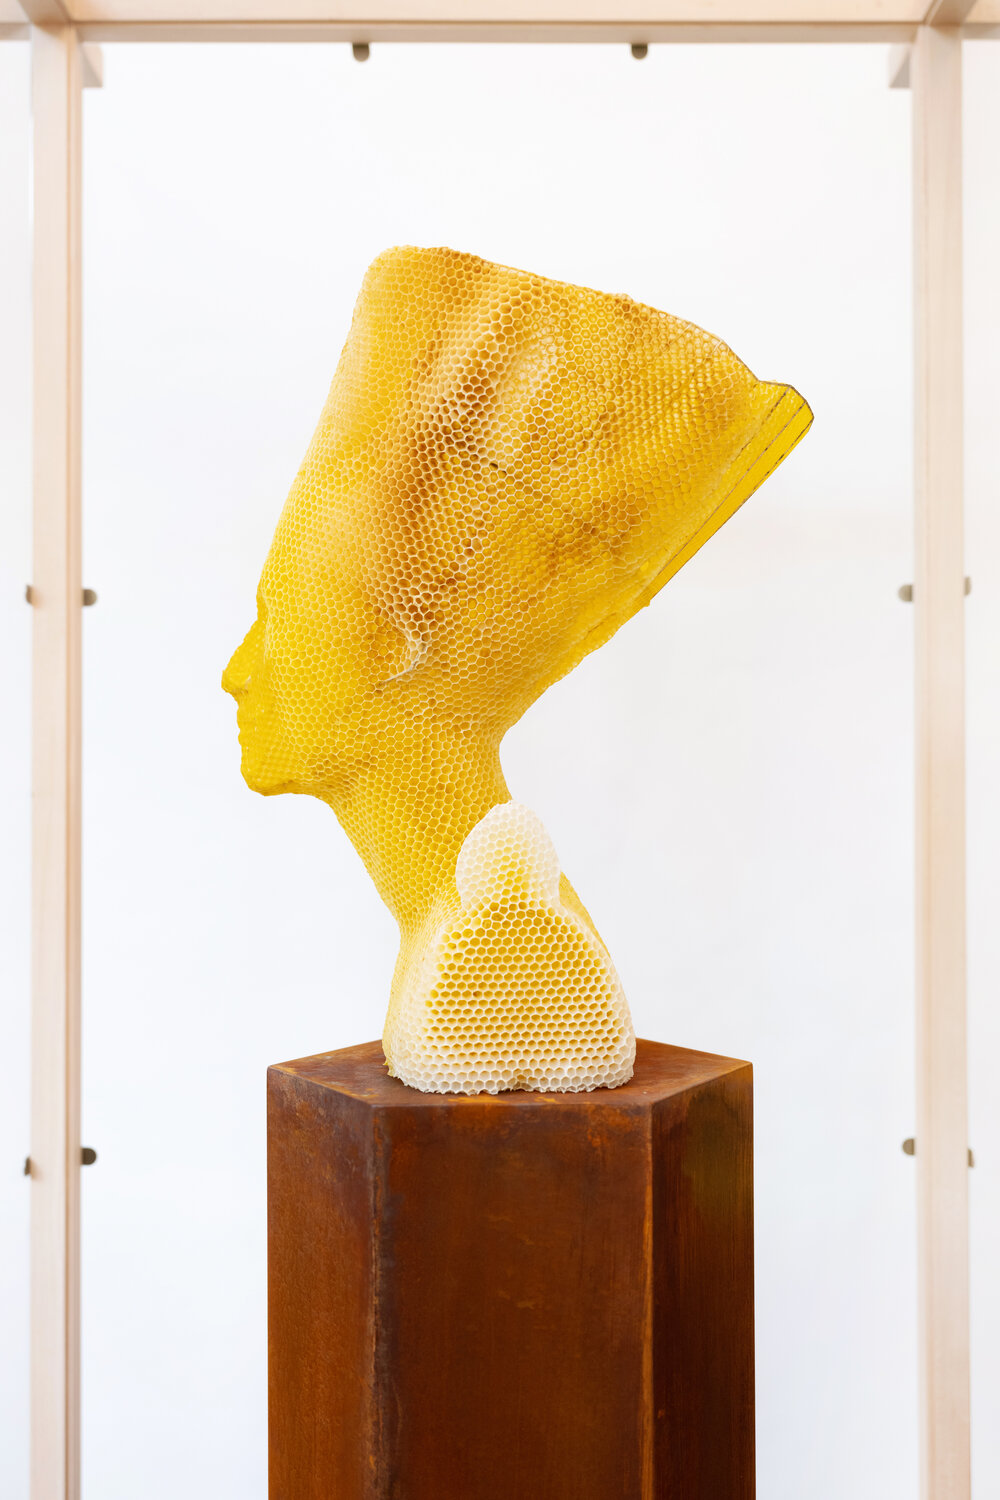 Tomáš Libertíny esculpe la versión en cera de abejas del busto de nefertiti junto con 60.000 abejas.